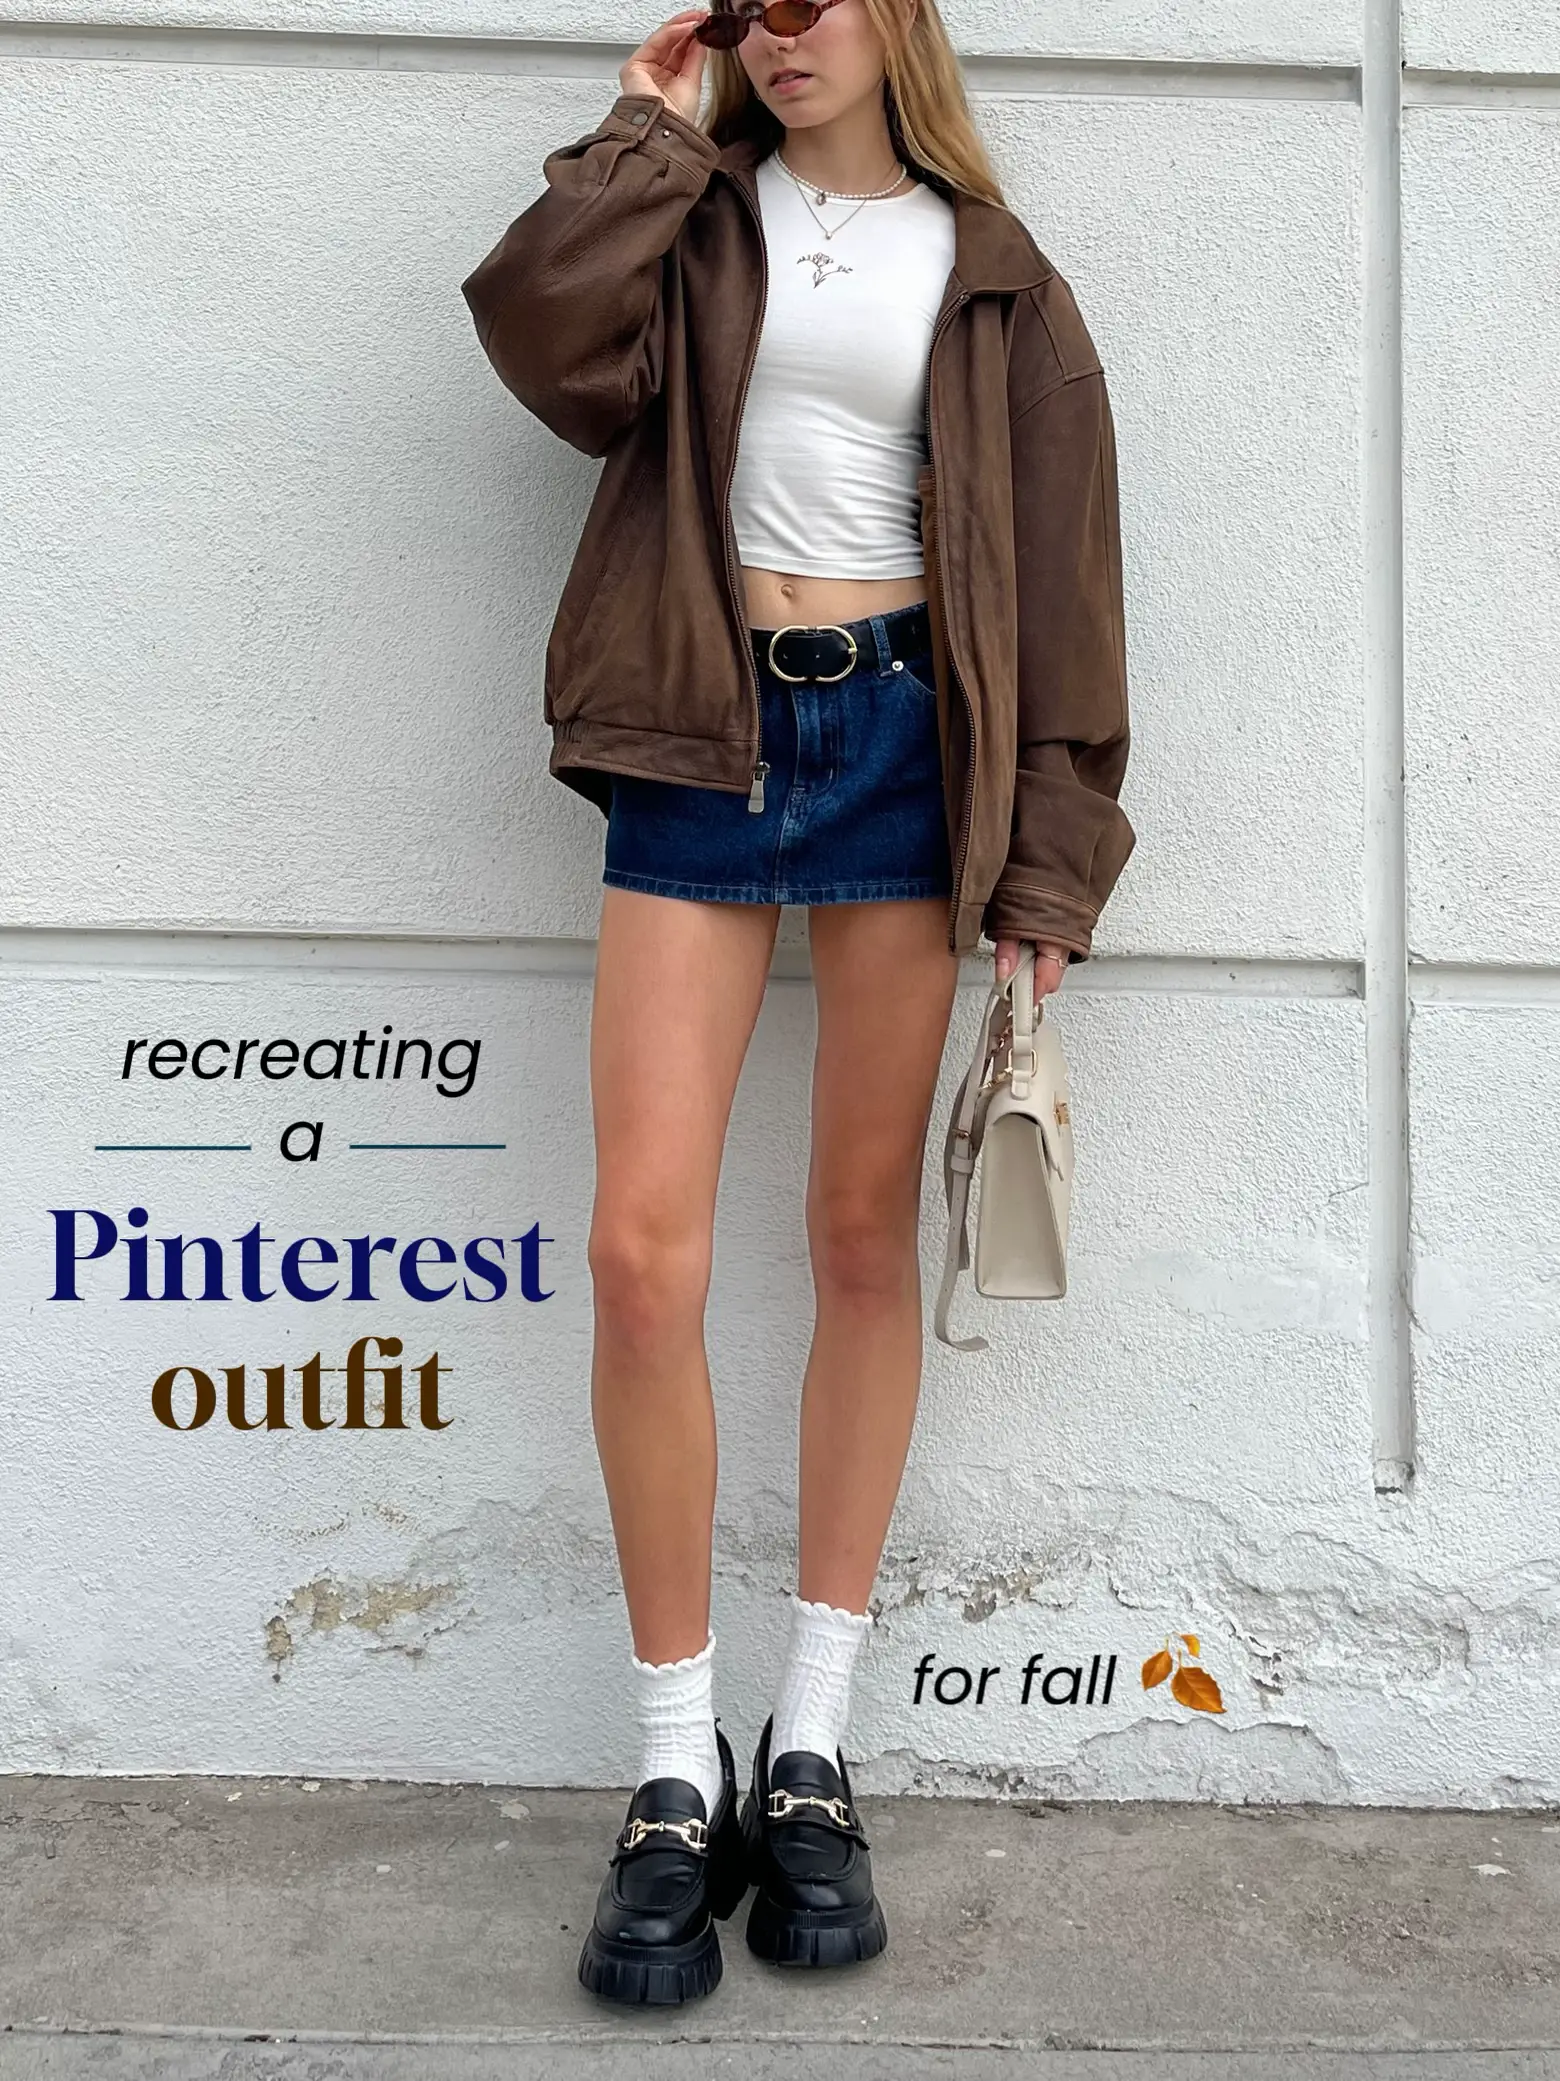 Pin on Fall Fashion